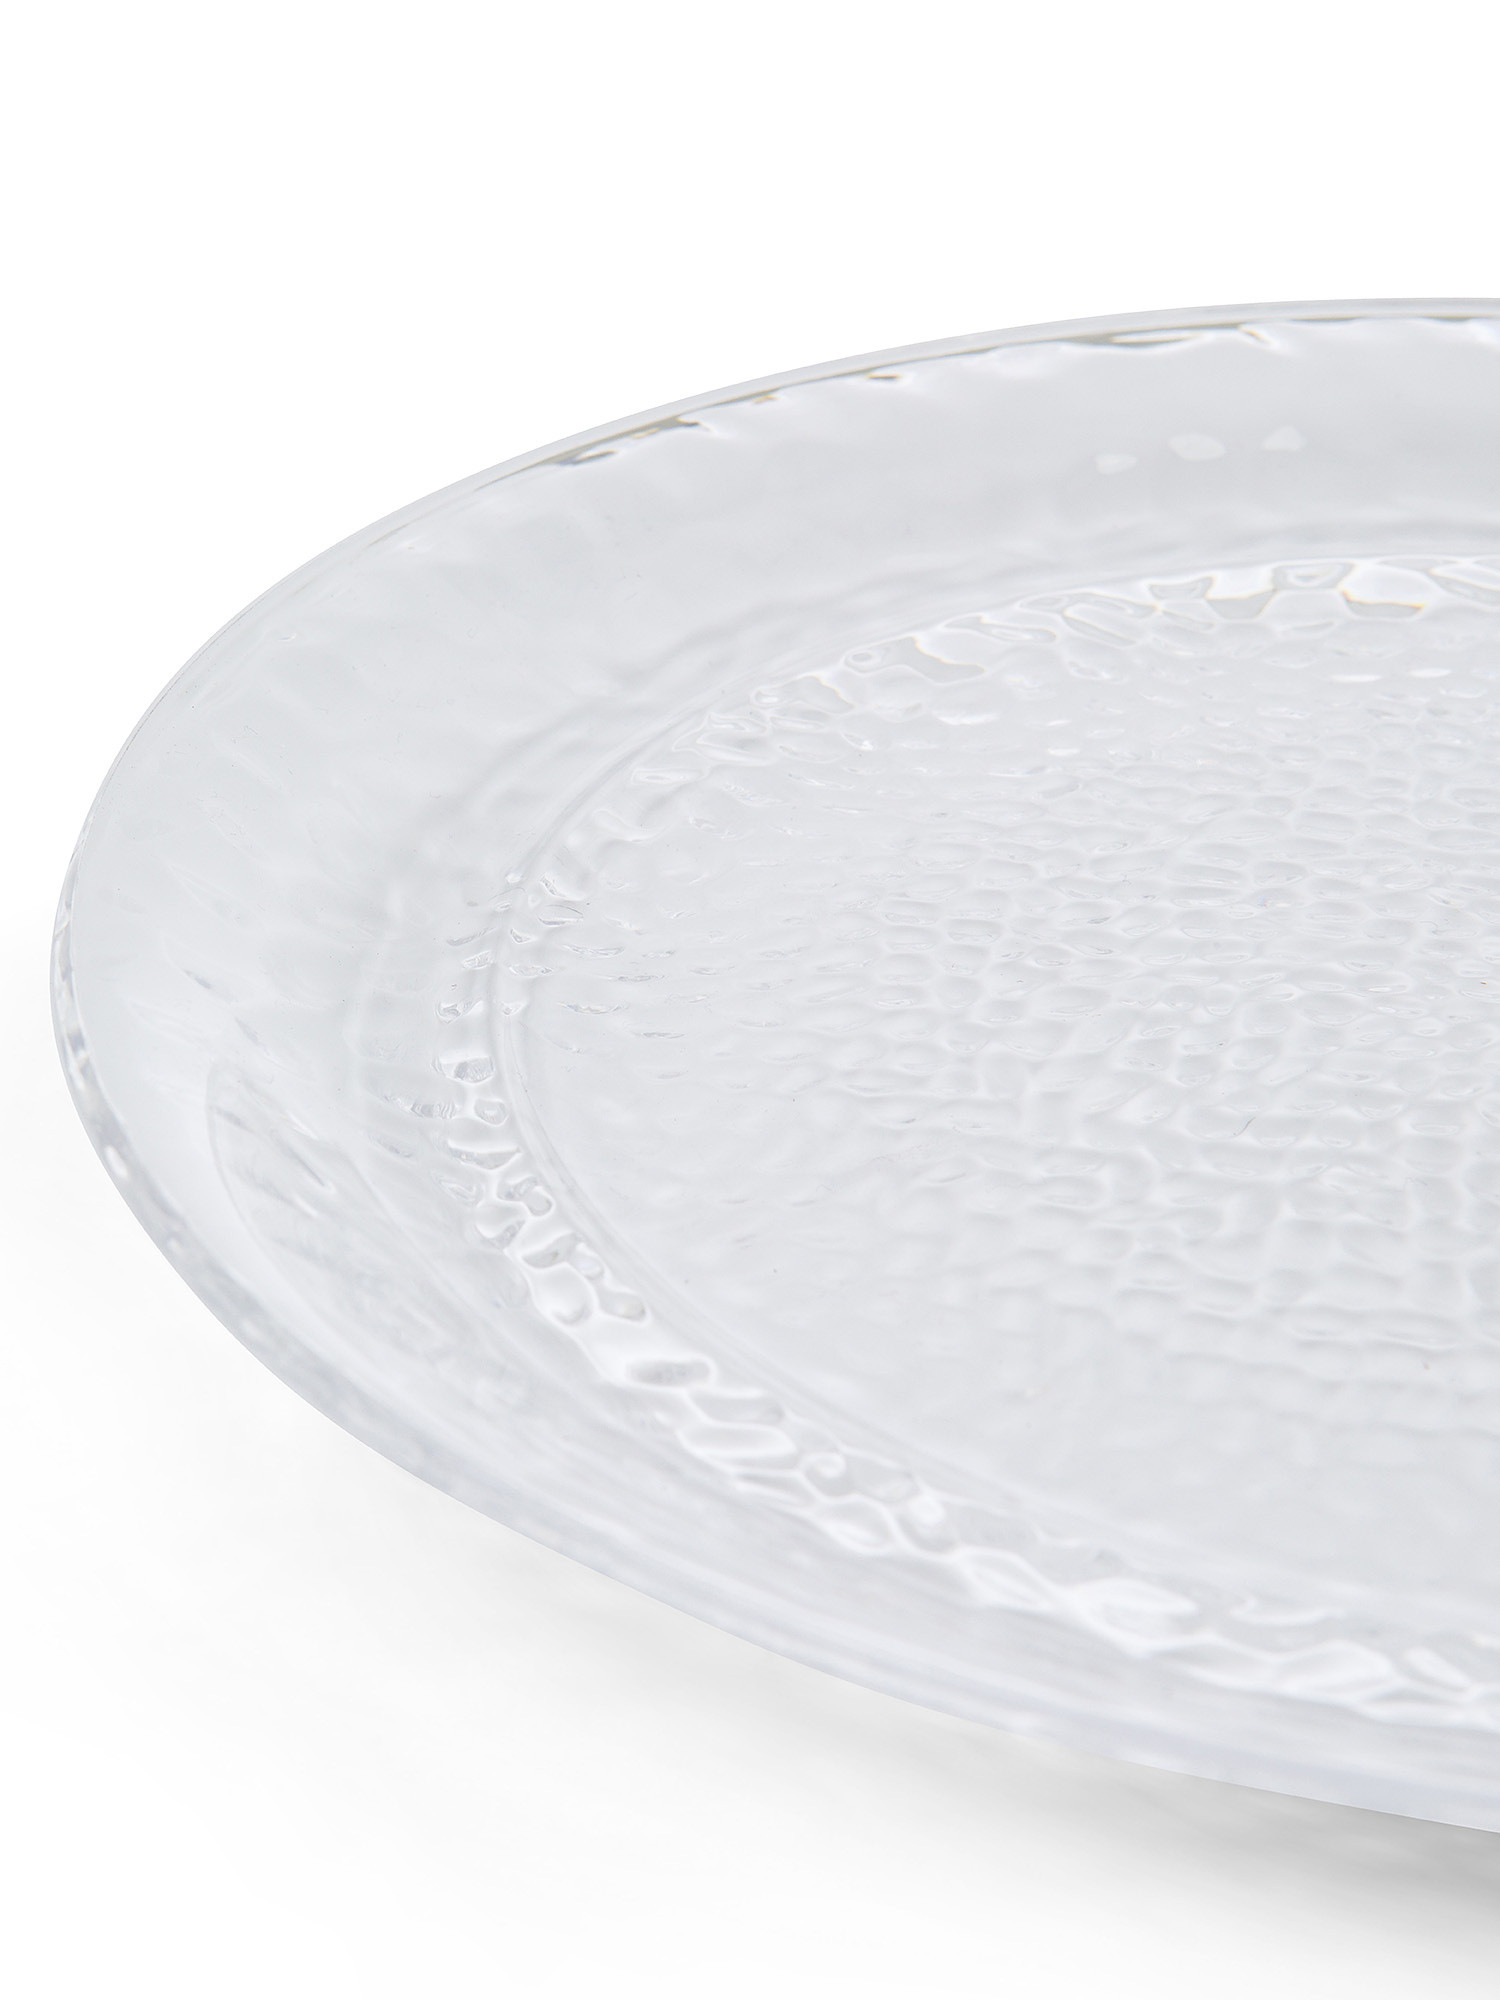 Transparent plastic dinner plate, Transparent, large image number 1